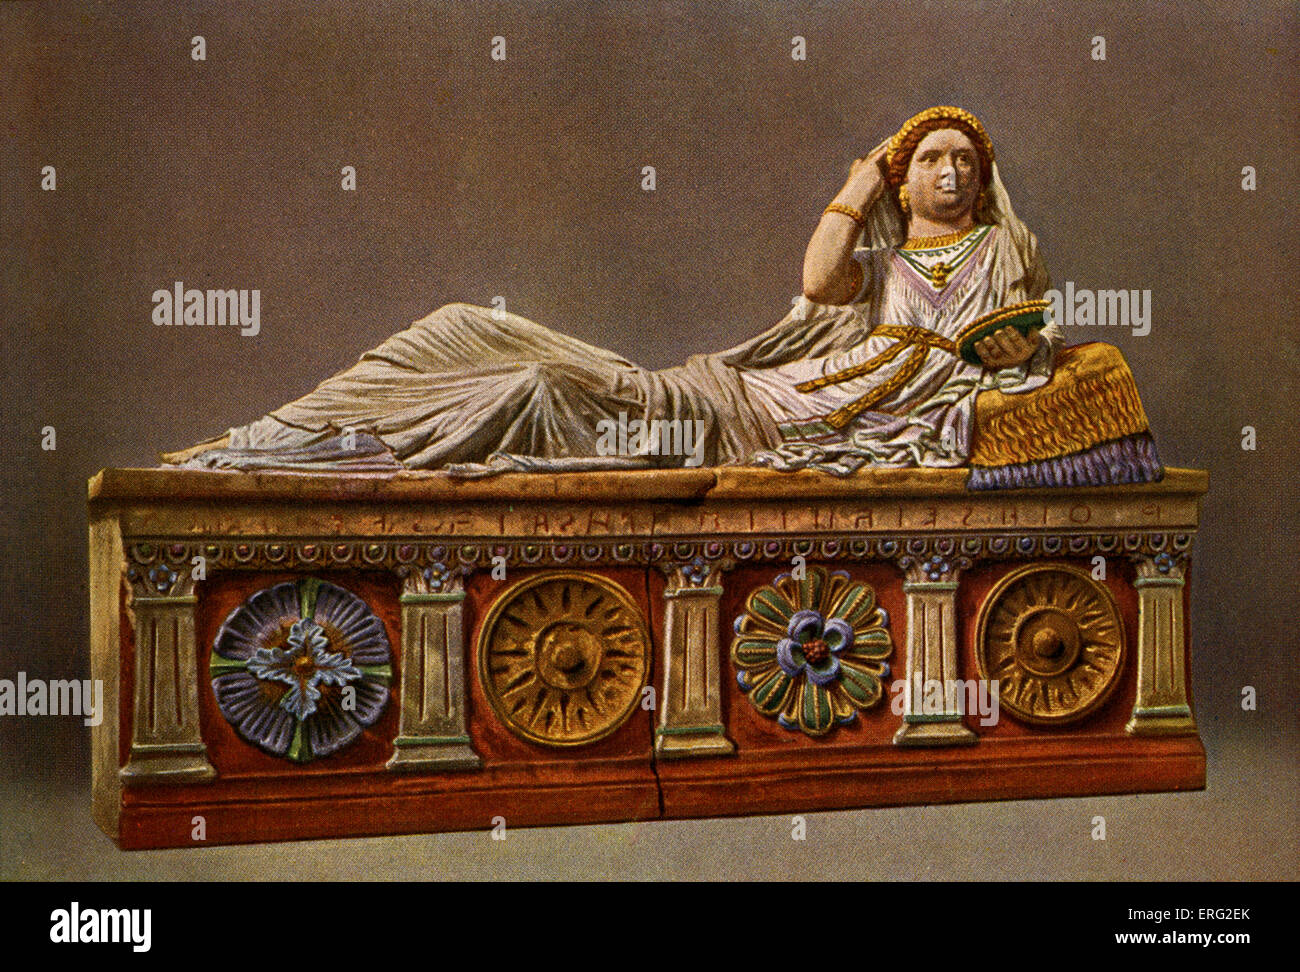 Dipinta etrusca sarcofago, che mostra una donna reclinabili con borchie decorative e colonne. Trovato a Chiusi. Foto Stock